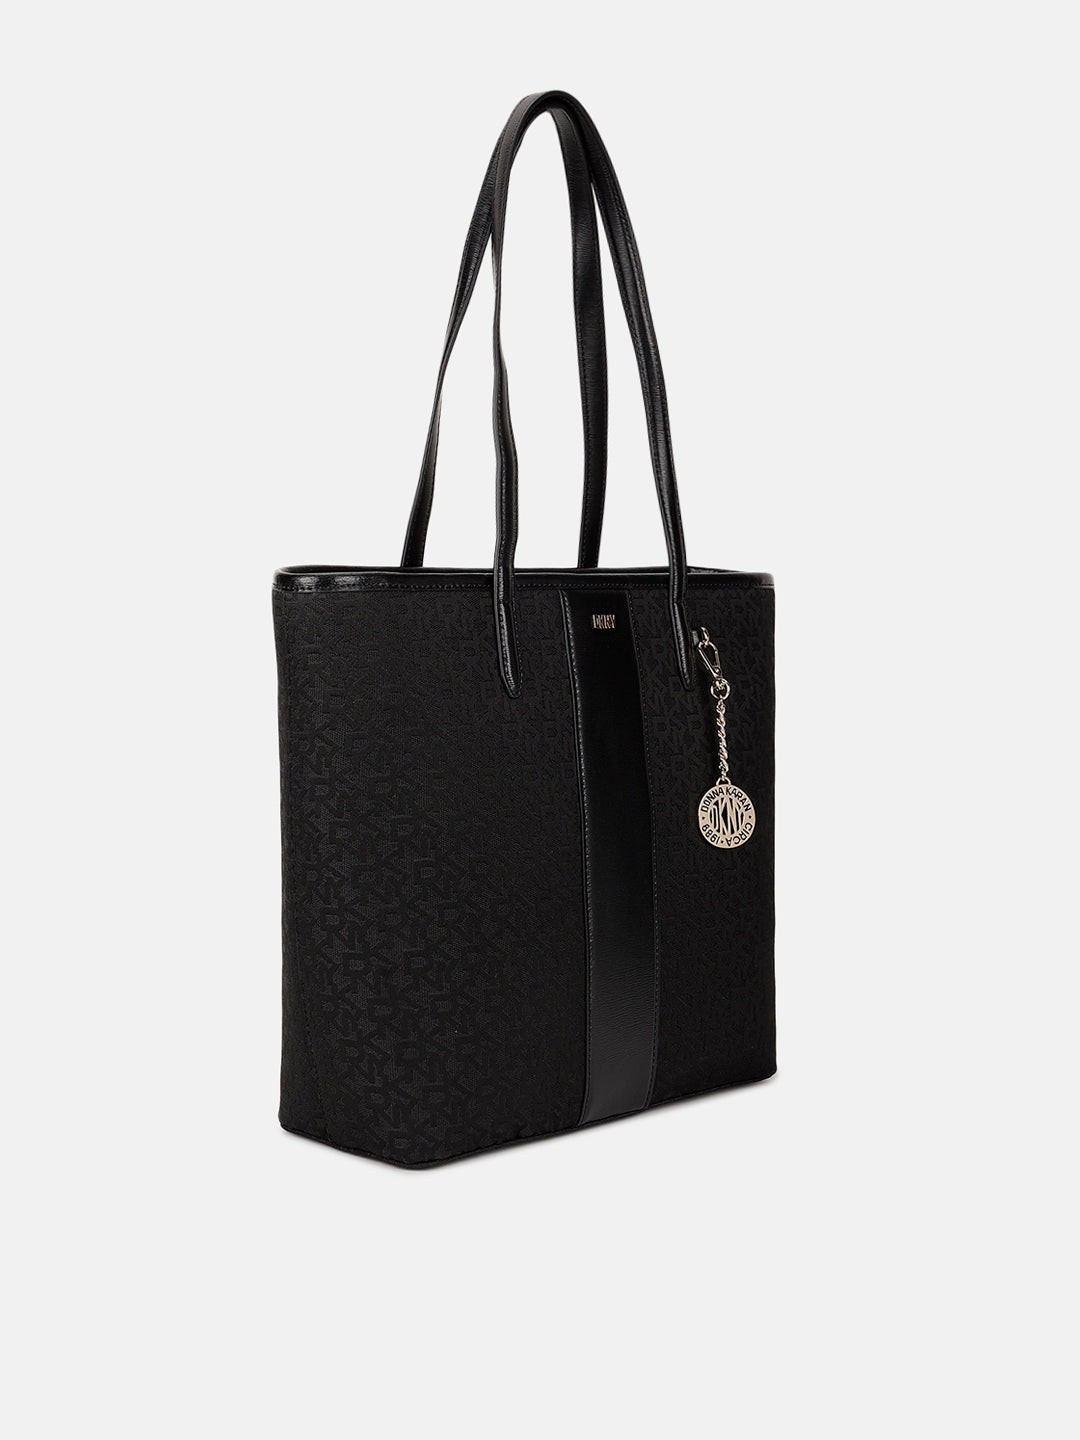 CITY DKNY Handbags | The RealReal